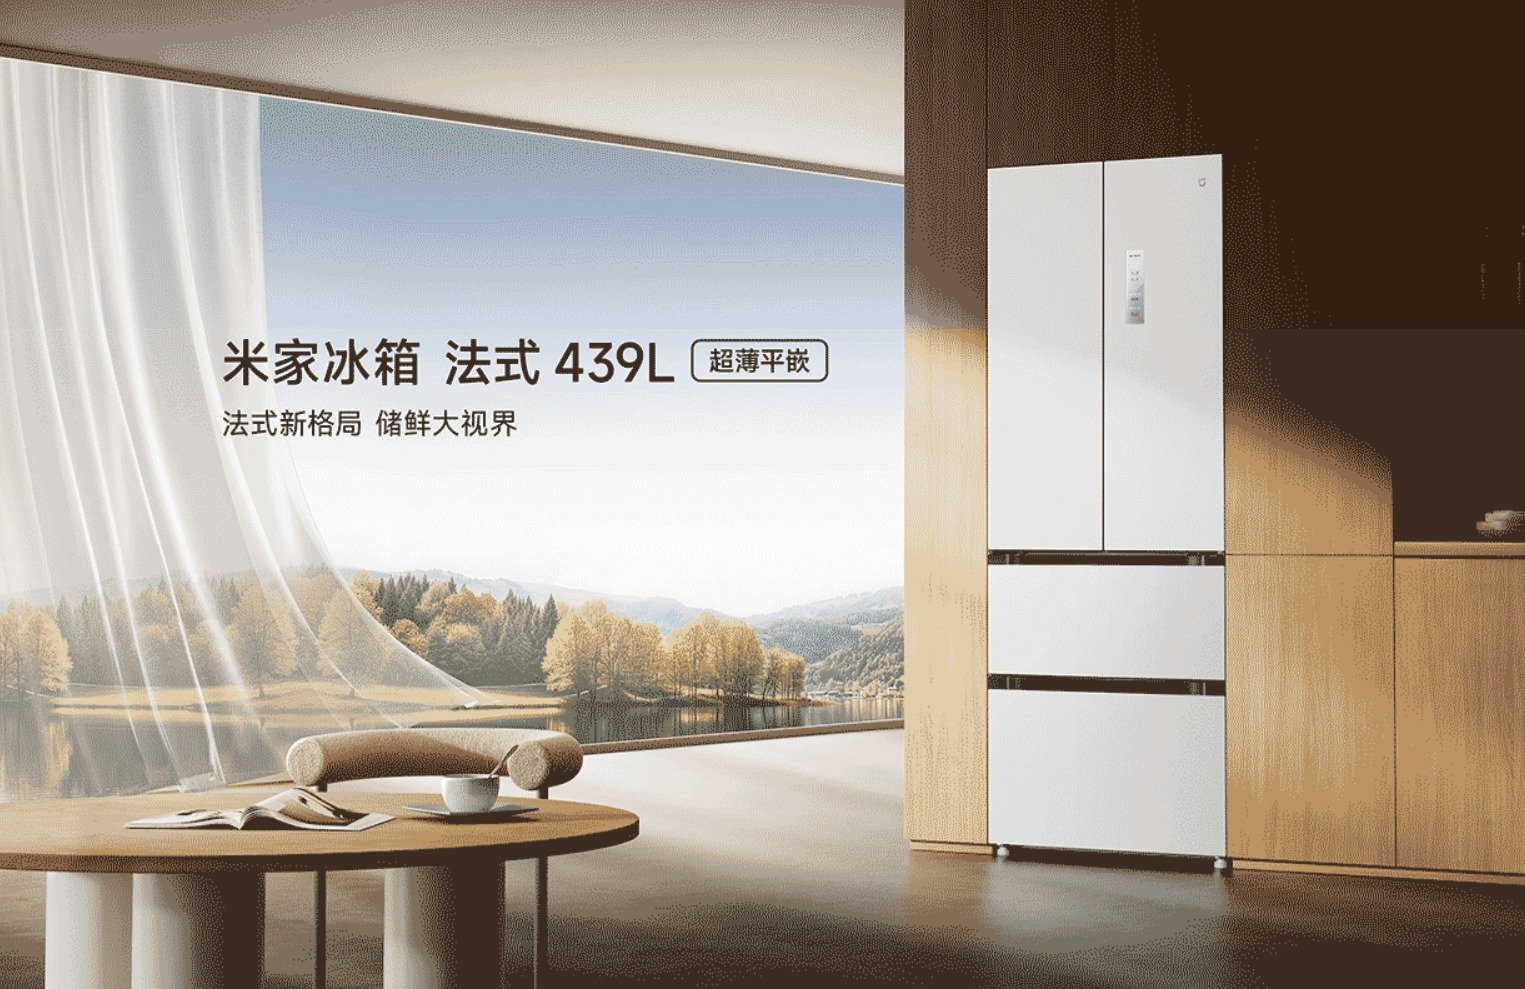 샤오미 미지아 프랑스형 냉장고 439L 중국 출시